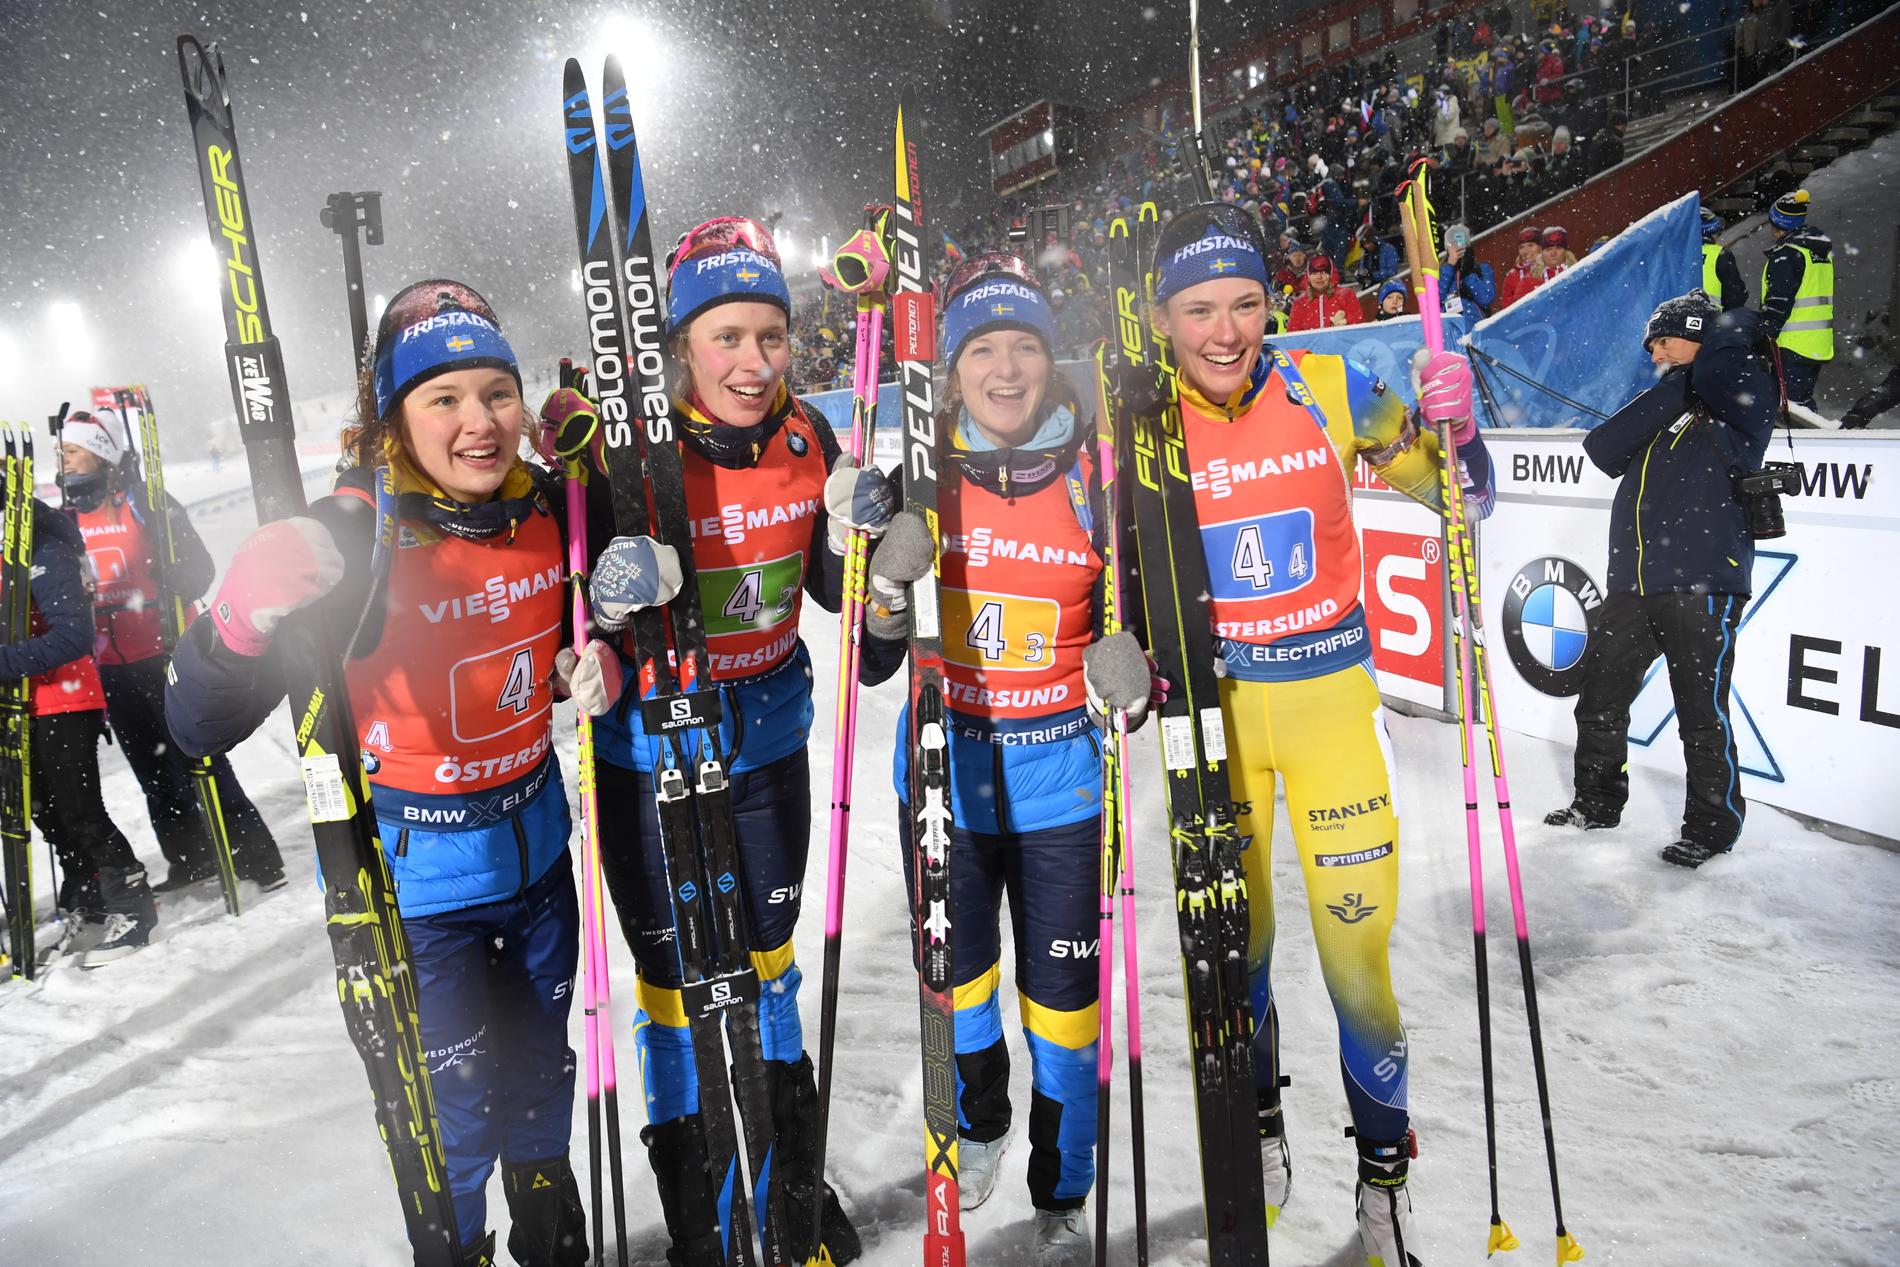 Sverige skidskyttedamer Linn Persson, Elvira Öberg, Mona Brorsson och Hanna Öberg kom på tredje plats i damernas stafett under fjolårets världscuppremiär. Frågan är om de får tävla på hemmaplan i år.